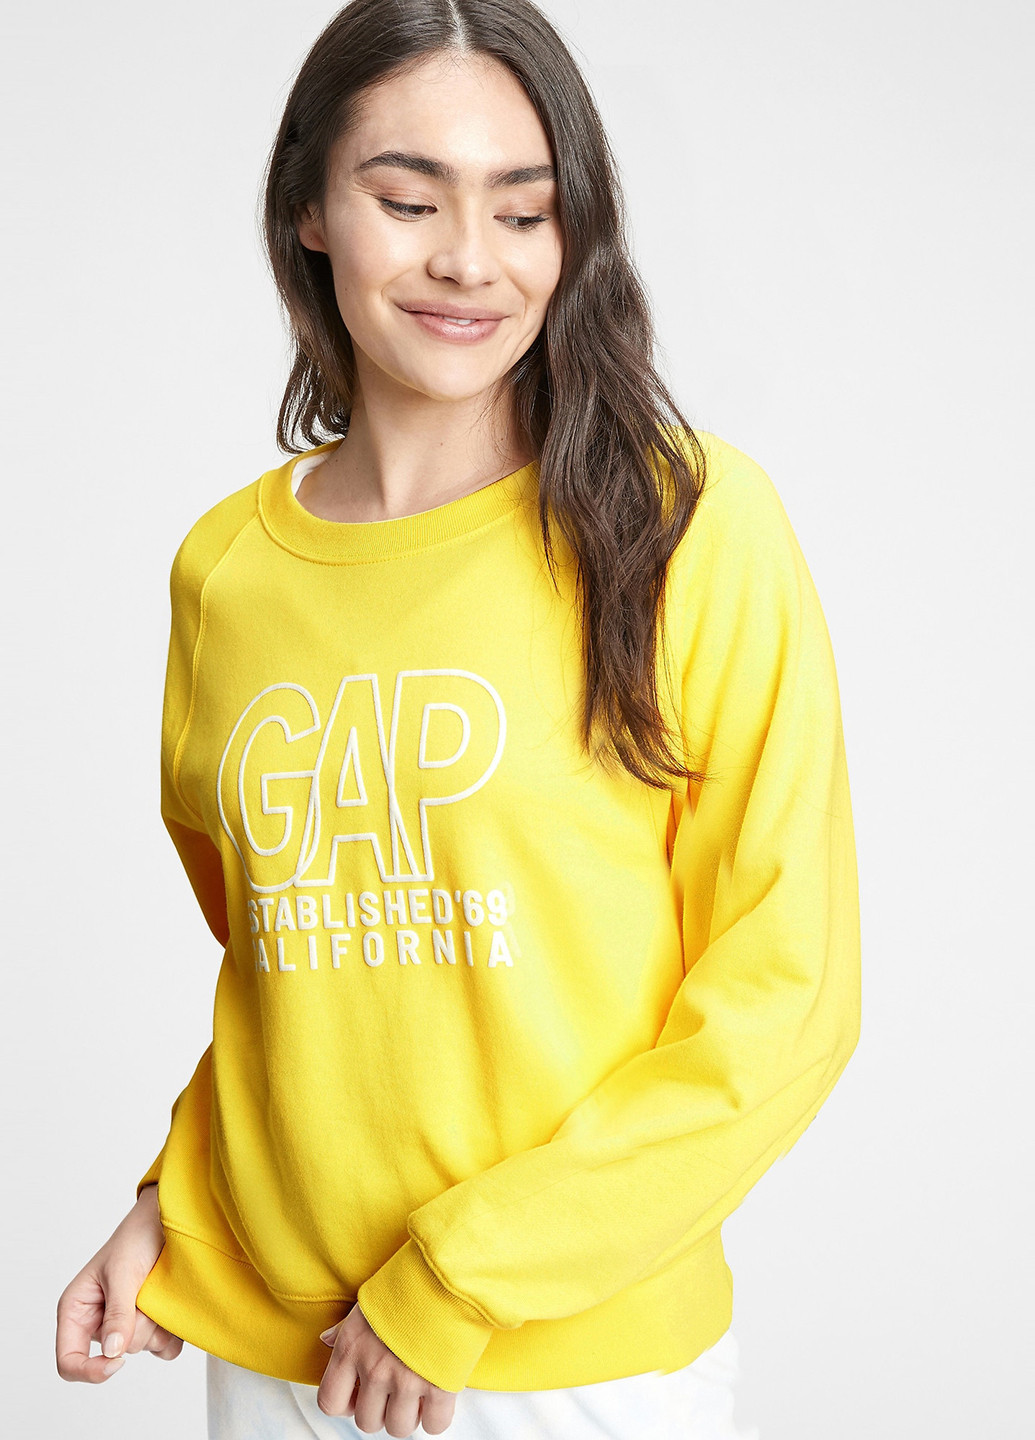 Світшот Gap - Прямий крій логотип жовтий кежуал бавовна - (240120391)